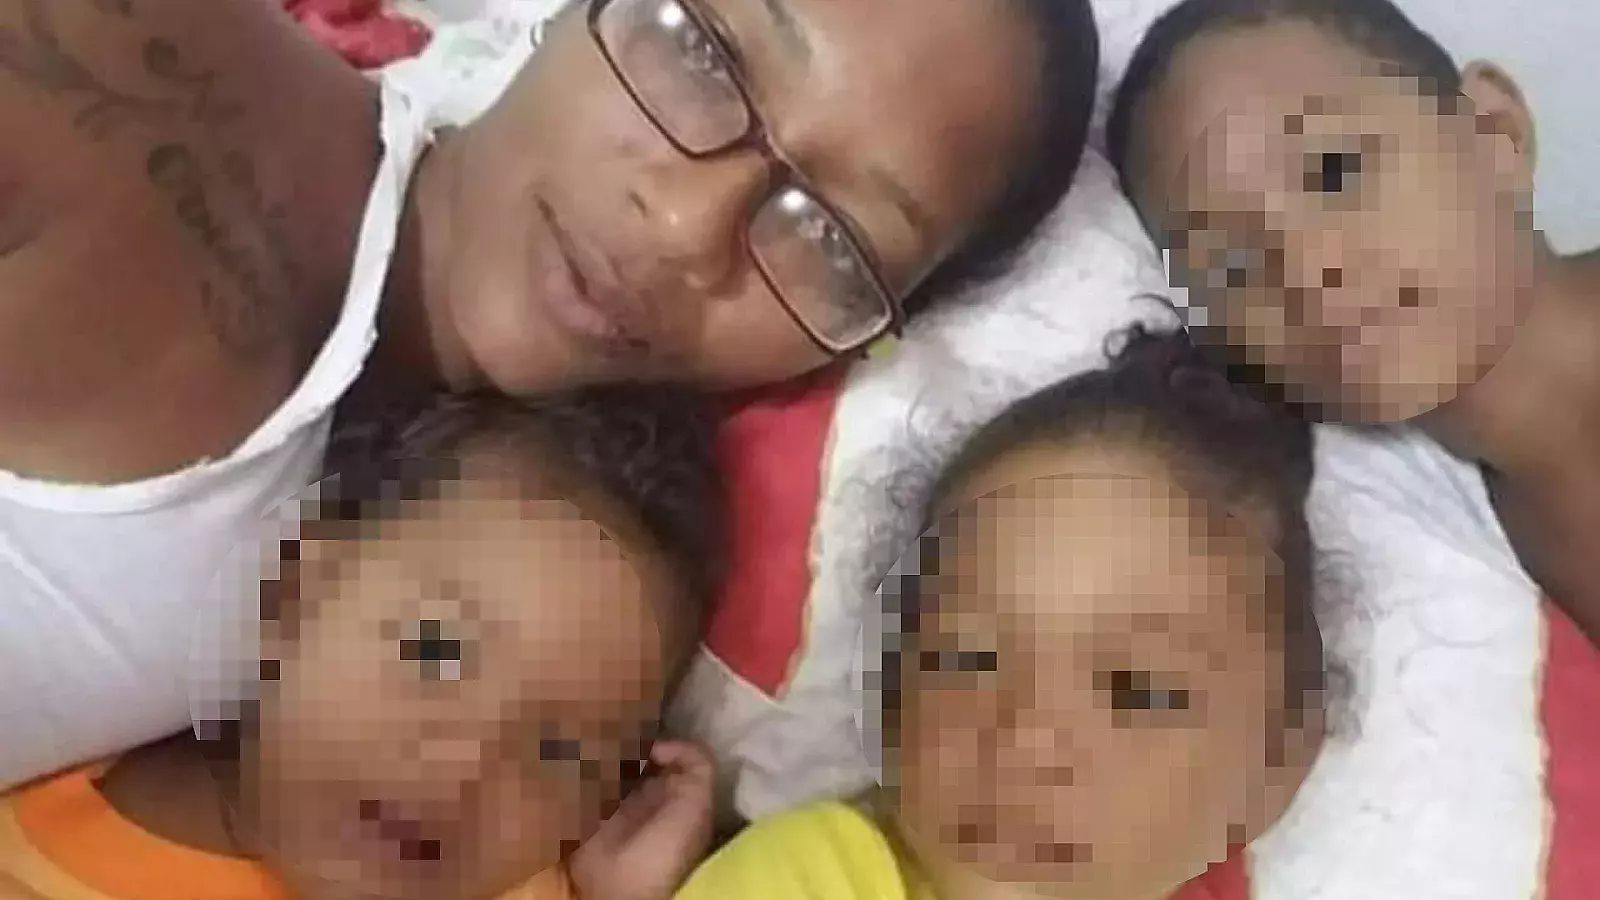 Activista de Unpacu detenida frente a sus tres hijos menores de edad